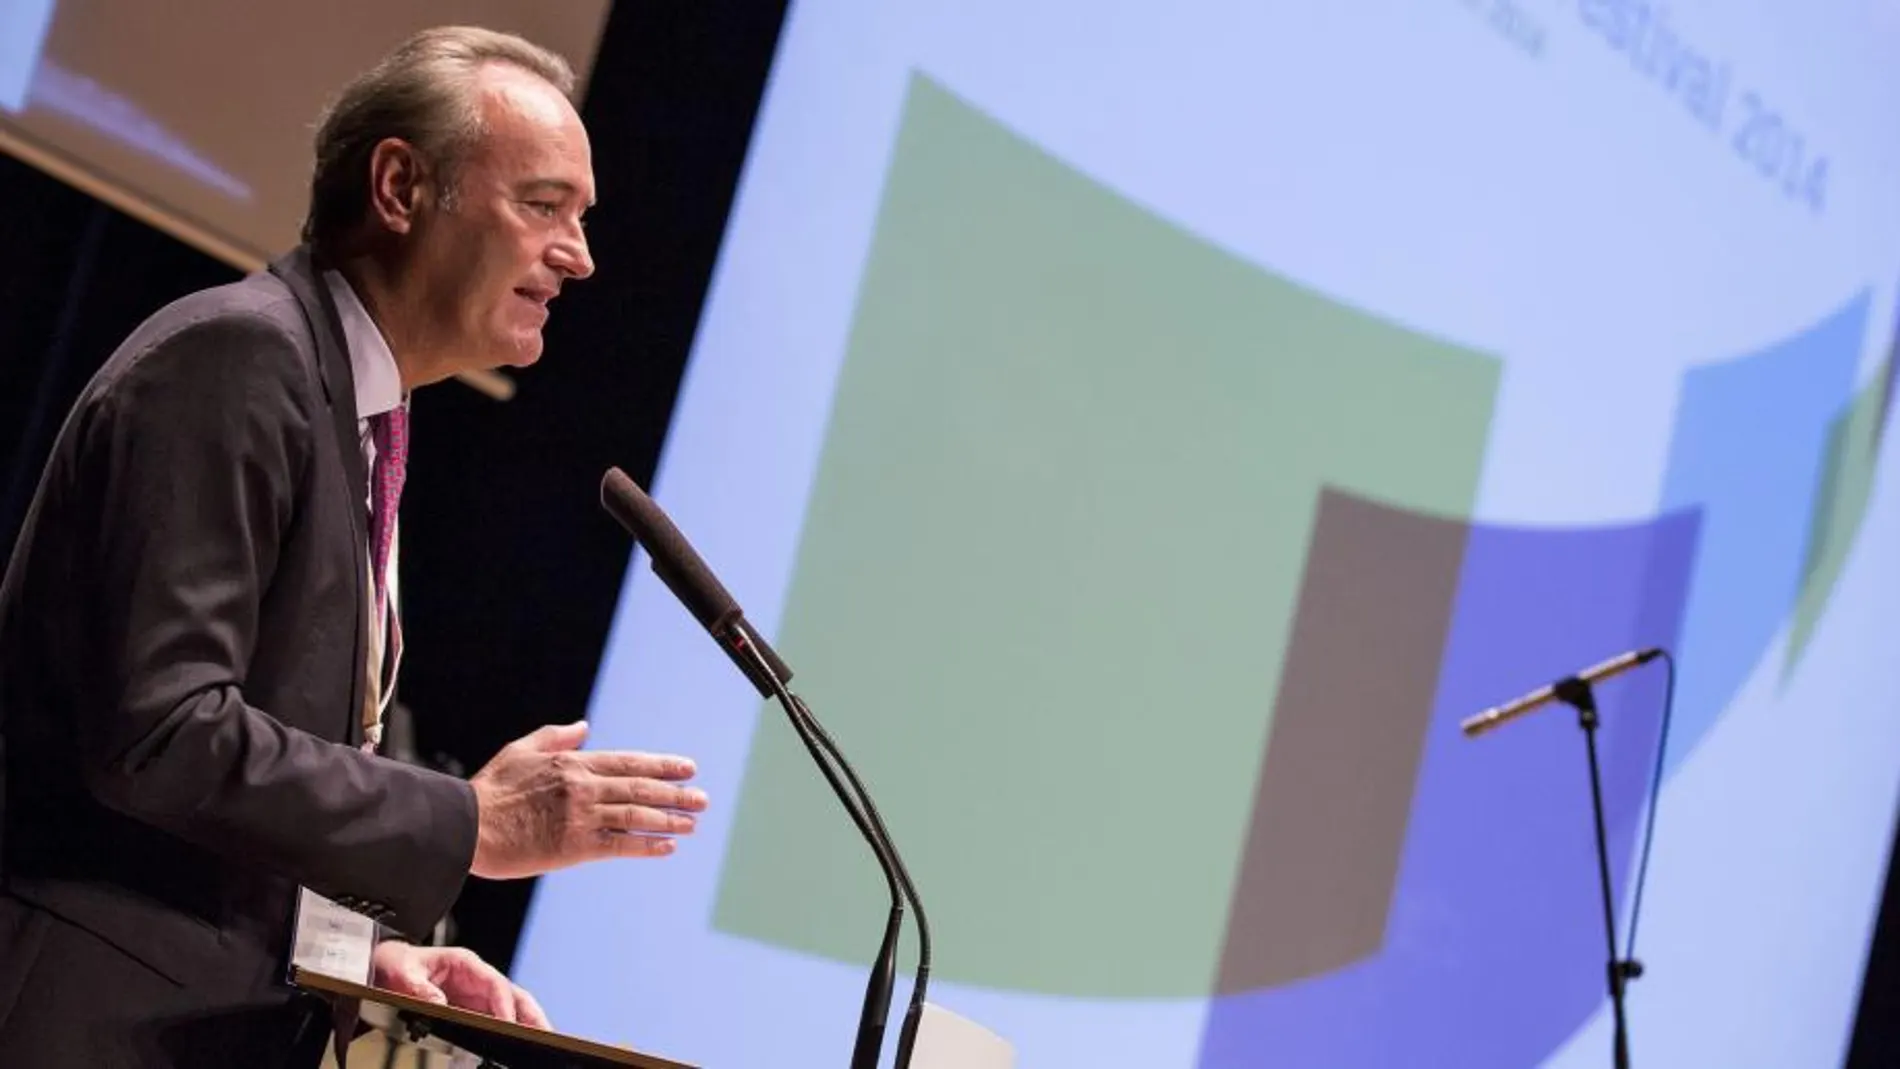 El president de la Generalitat, Alberto Fabra, ha presidido la inauguración del Festival de la Innovación "Climate-Kic".